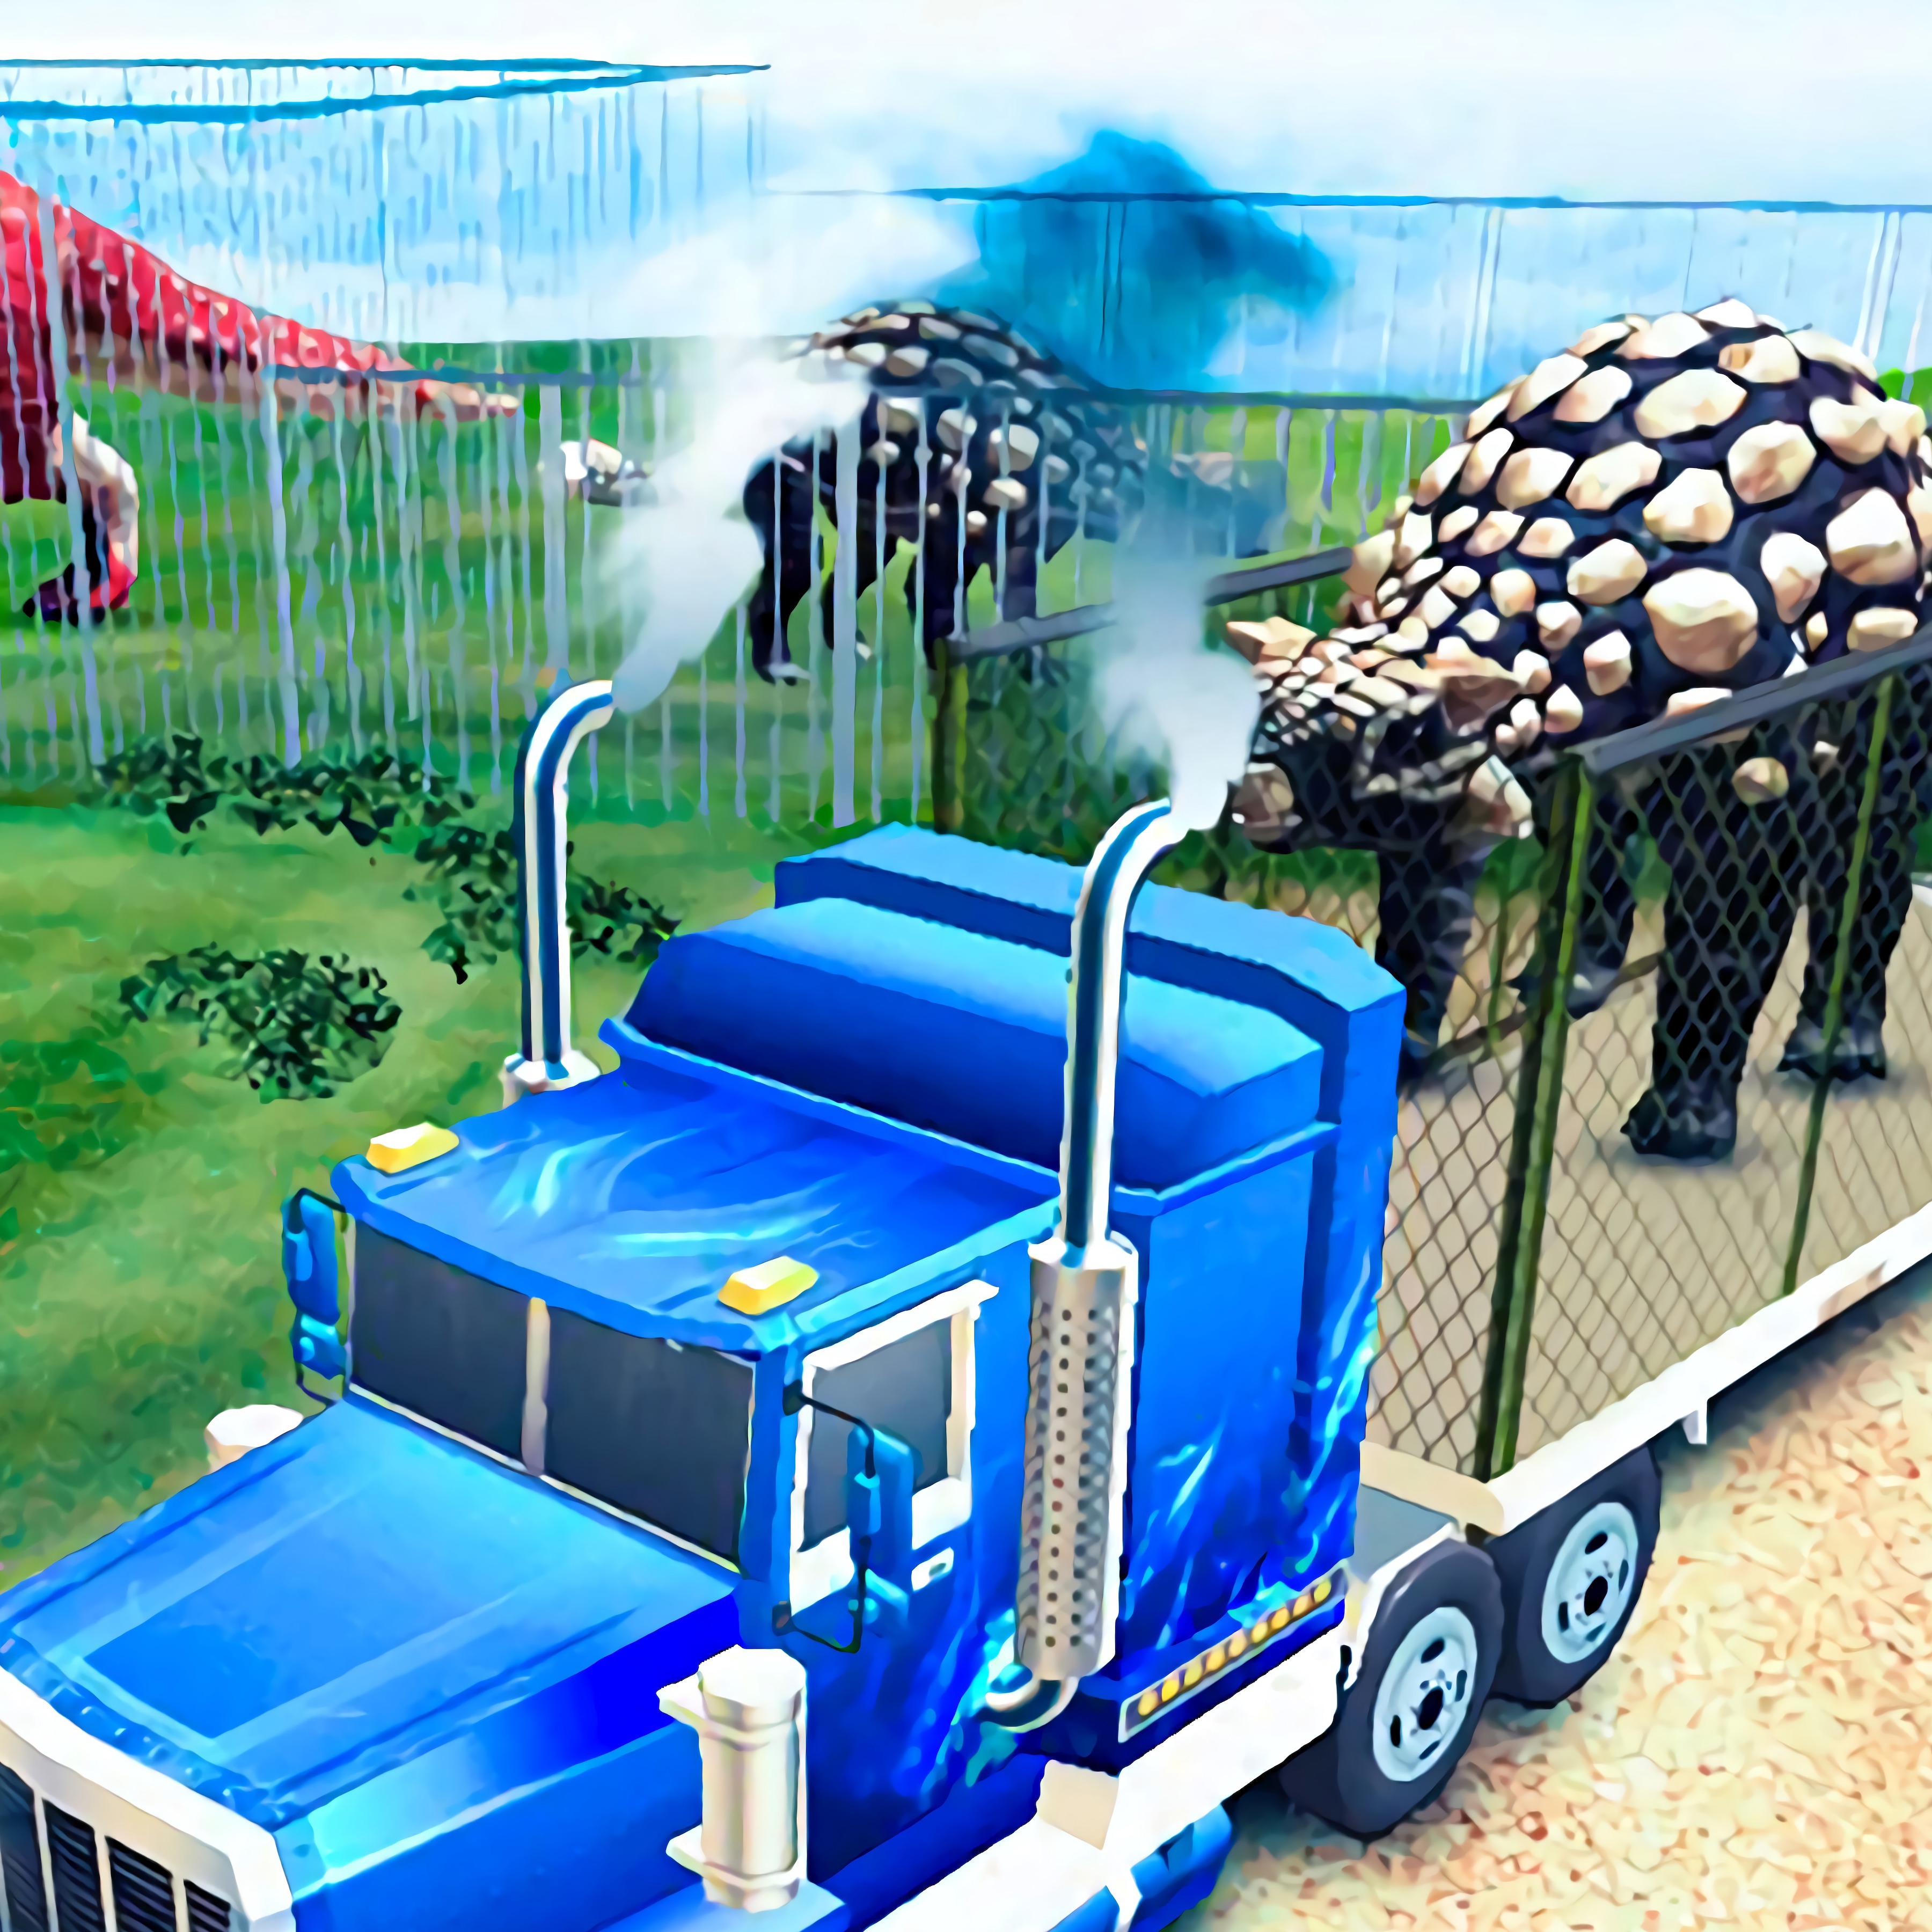 Transport Dinos to The Dino Zoo